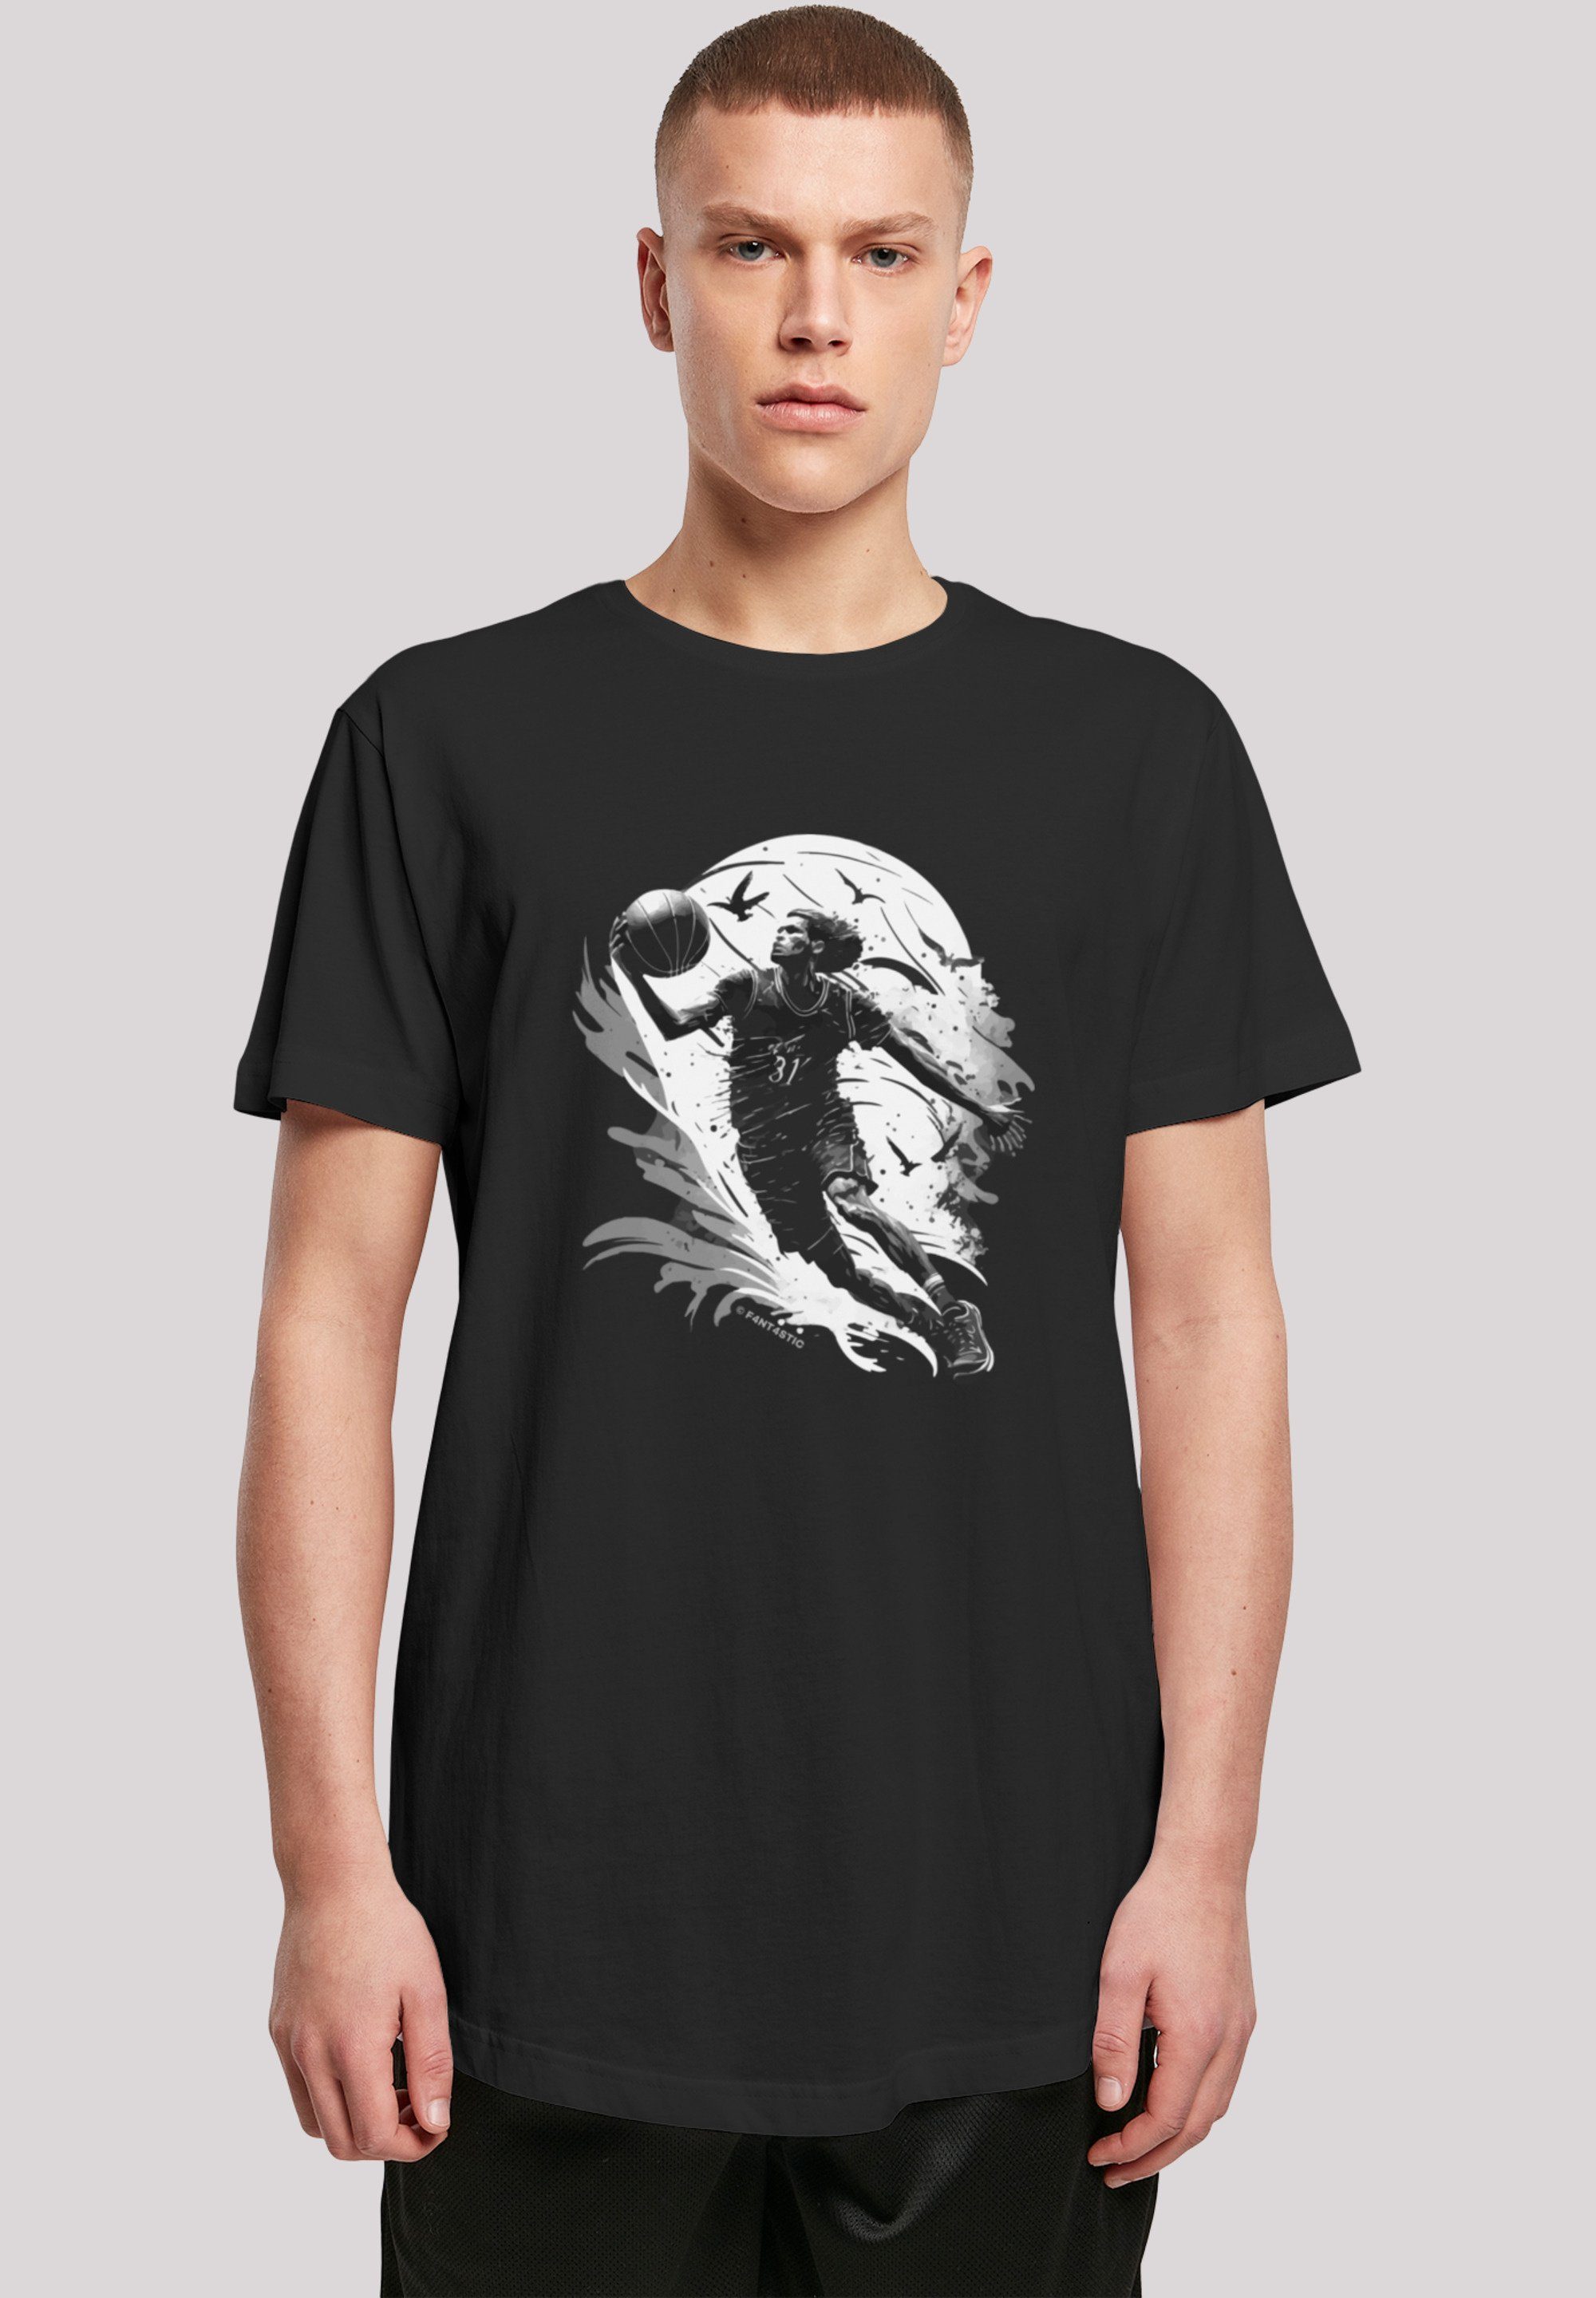 F4NT4STIC T-Shirt Basketball Spieler Baumwollstoff Tragekomfort Print, hohem mit weicher Sehr